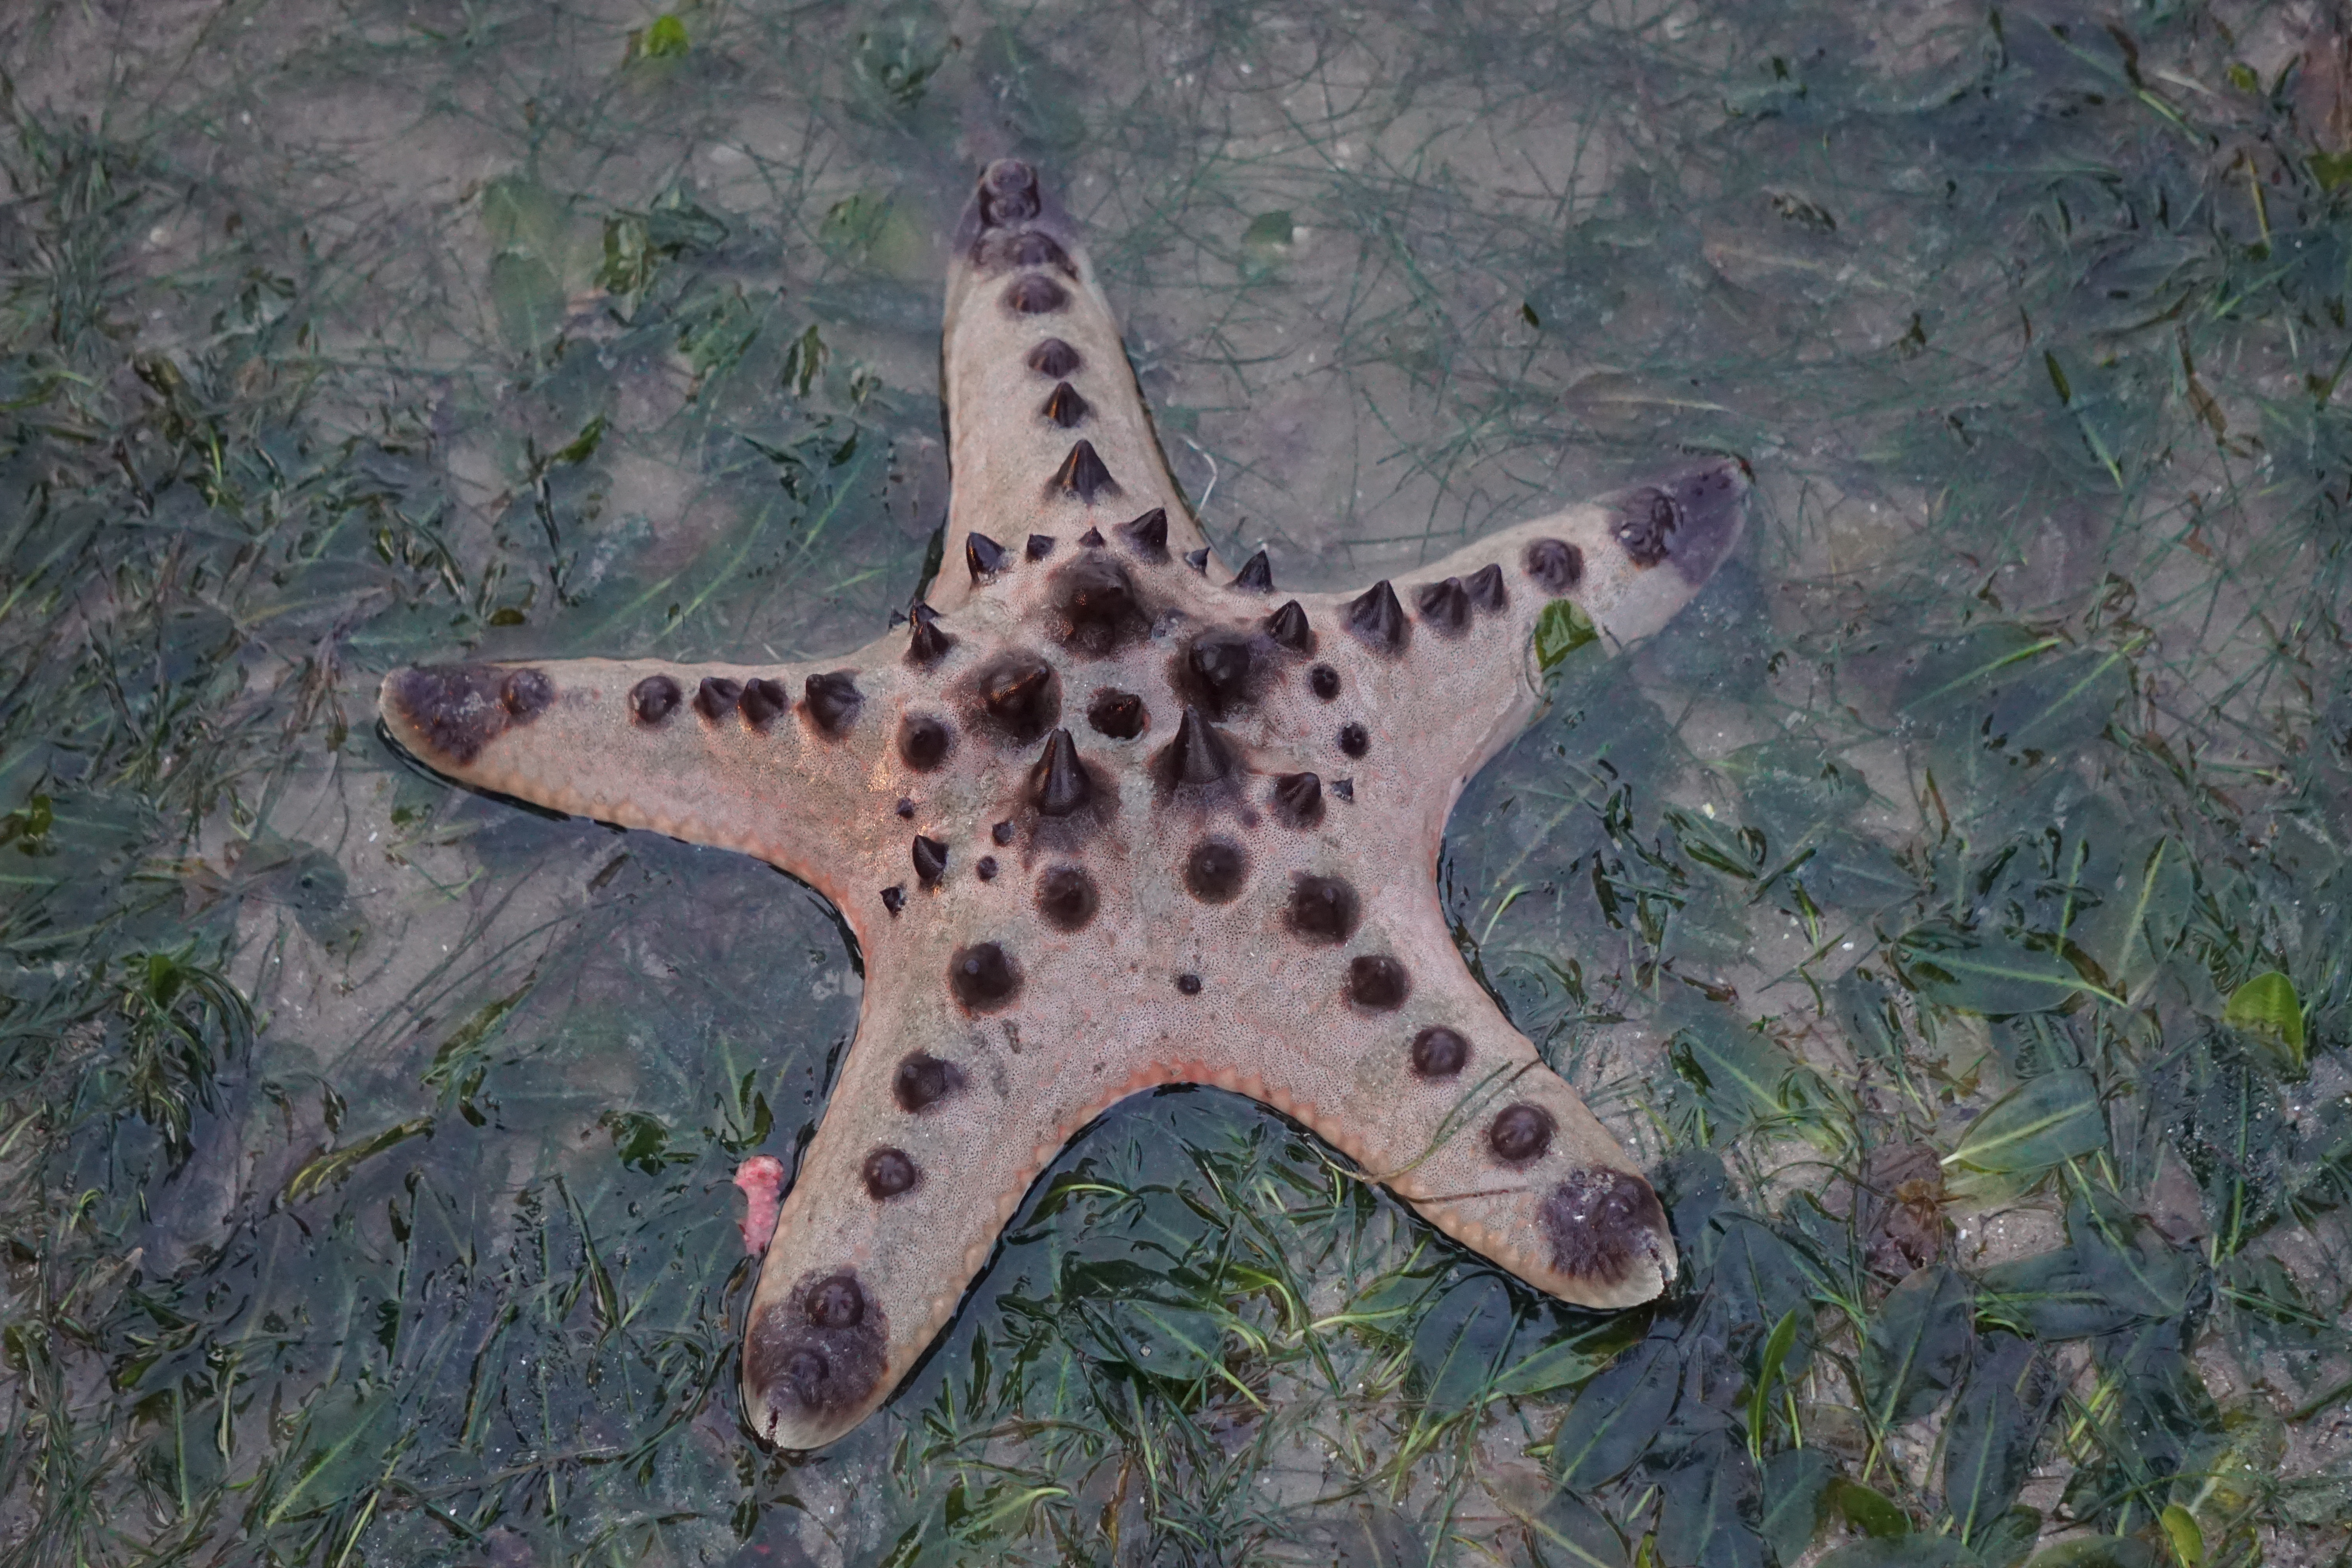 Knobbly sea star